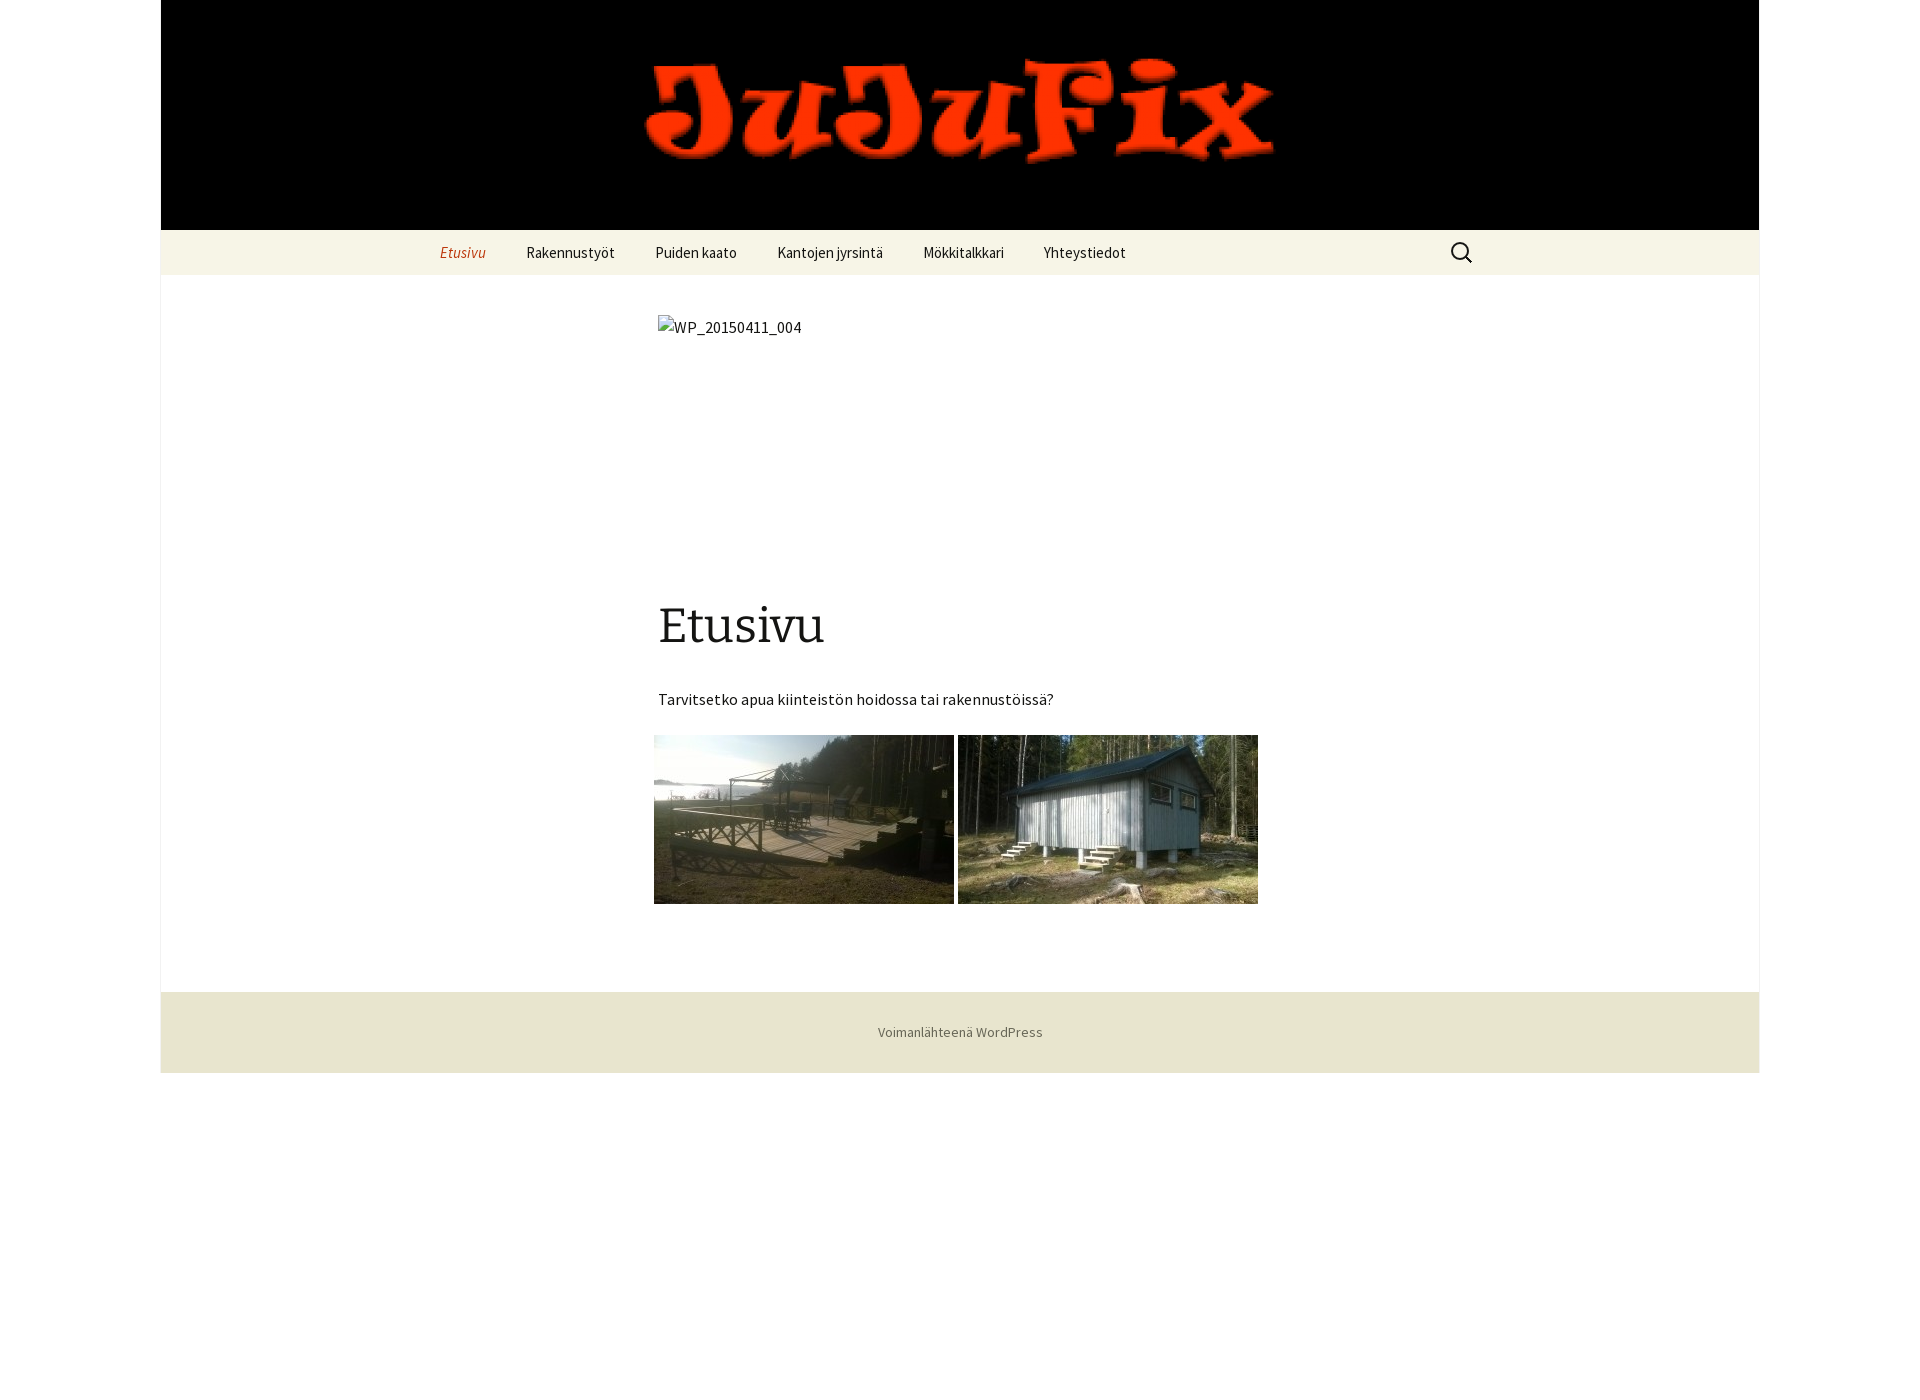 Skärmdump för jujufix.fi